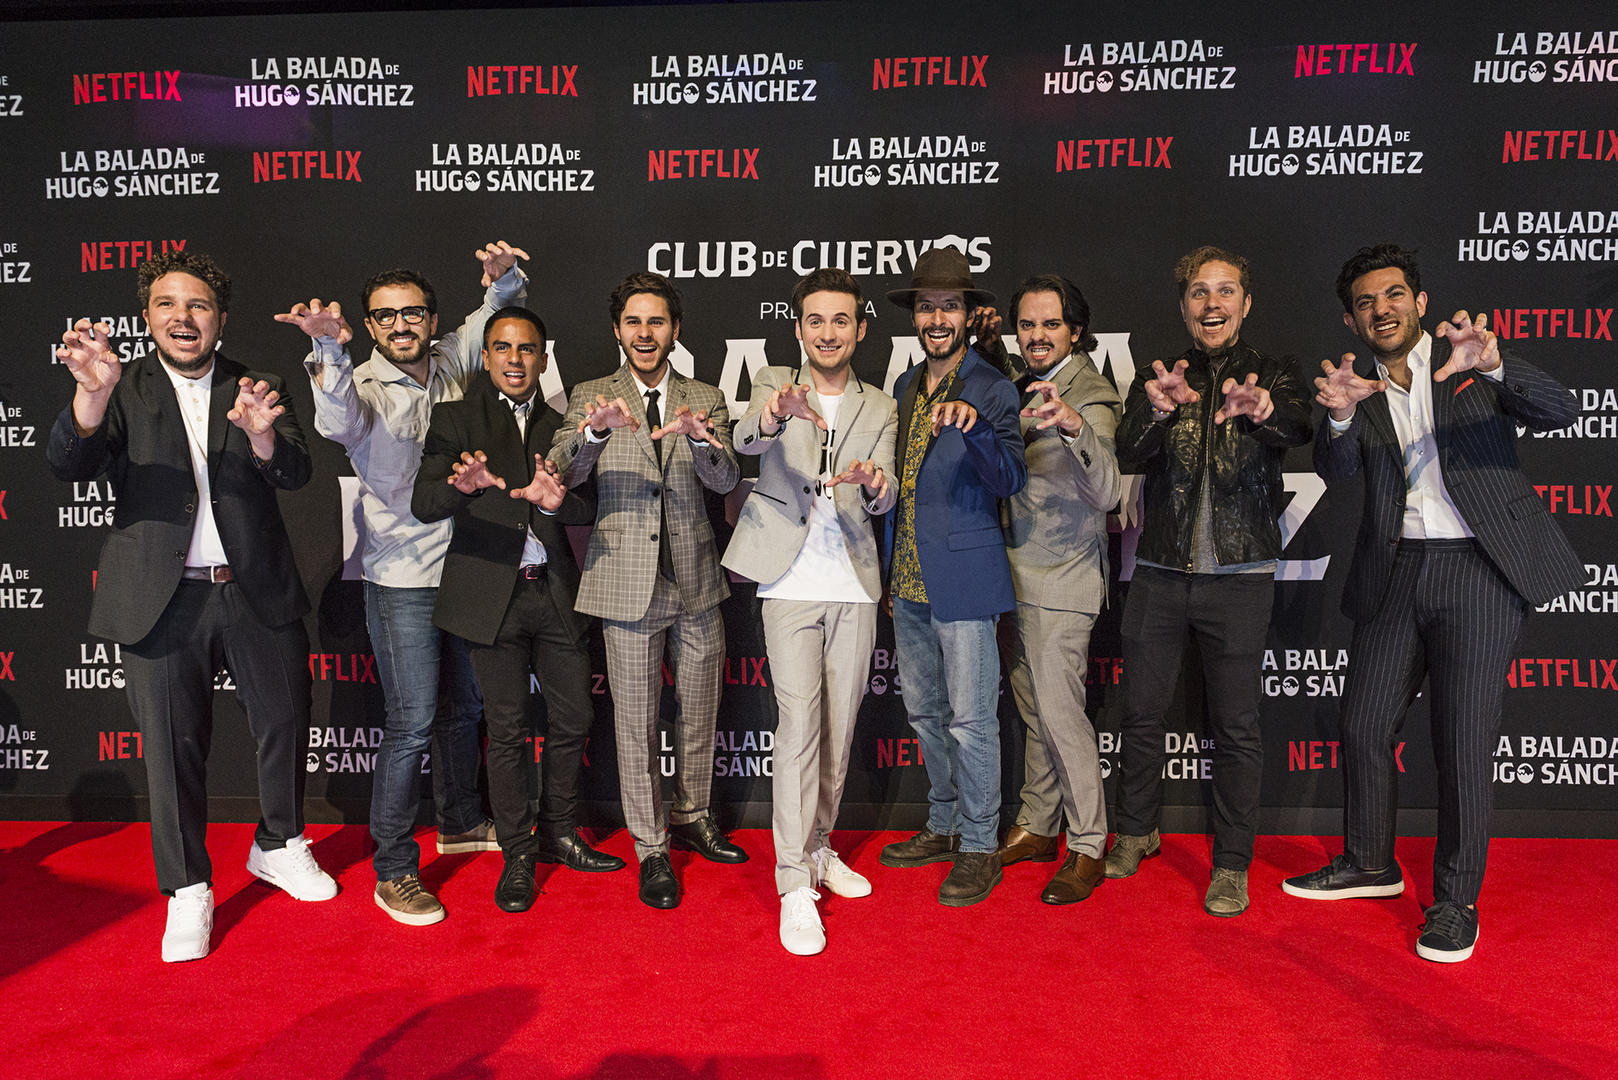 Netflix estrena La Balada de Hugo Sánchez después del partido de México |  Digital Trends Español